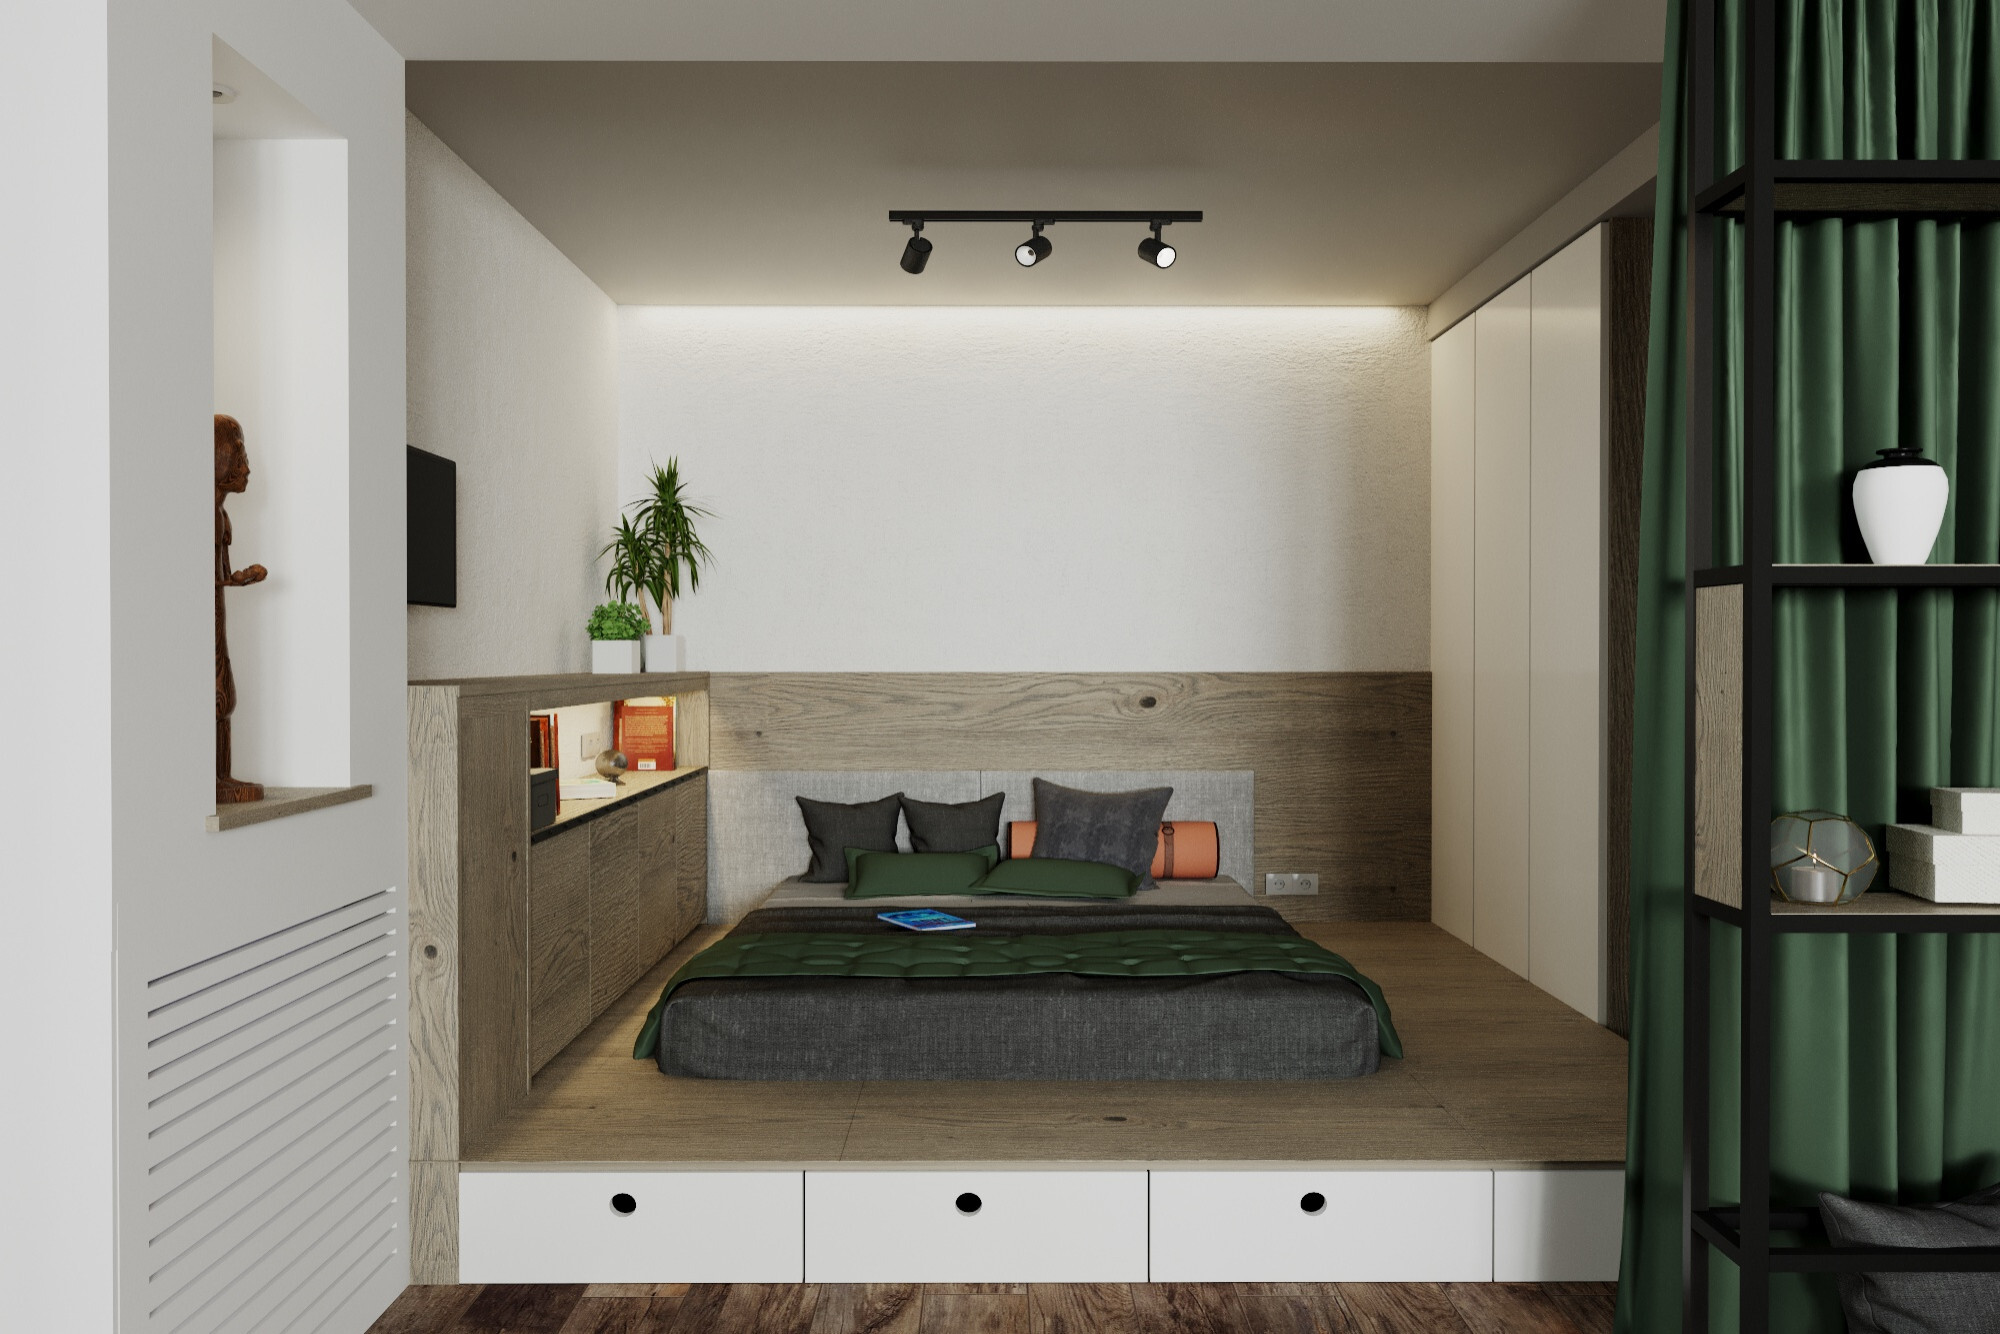 Интерьер спальни с рейками с подсветкой, бра над кроватью, подсветкой светодиодной и светильниками над кроватью в стиле лофт и эко